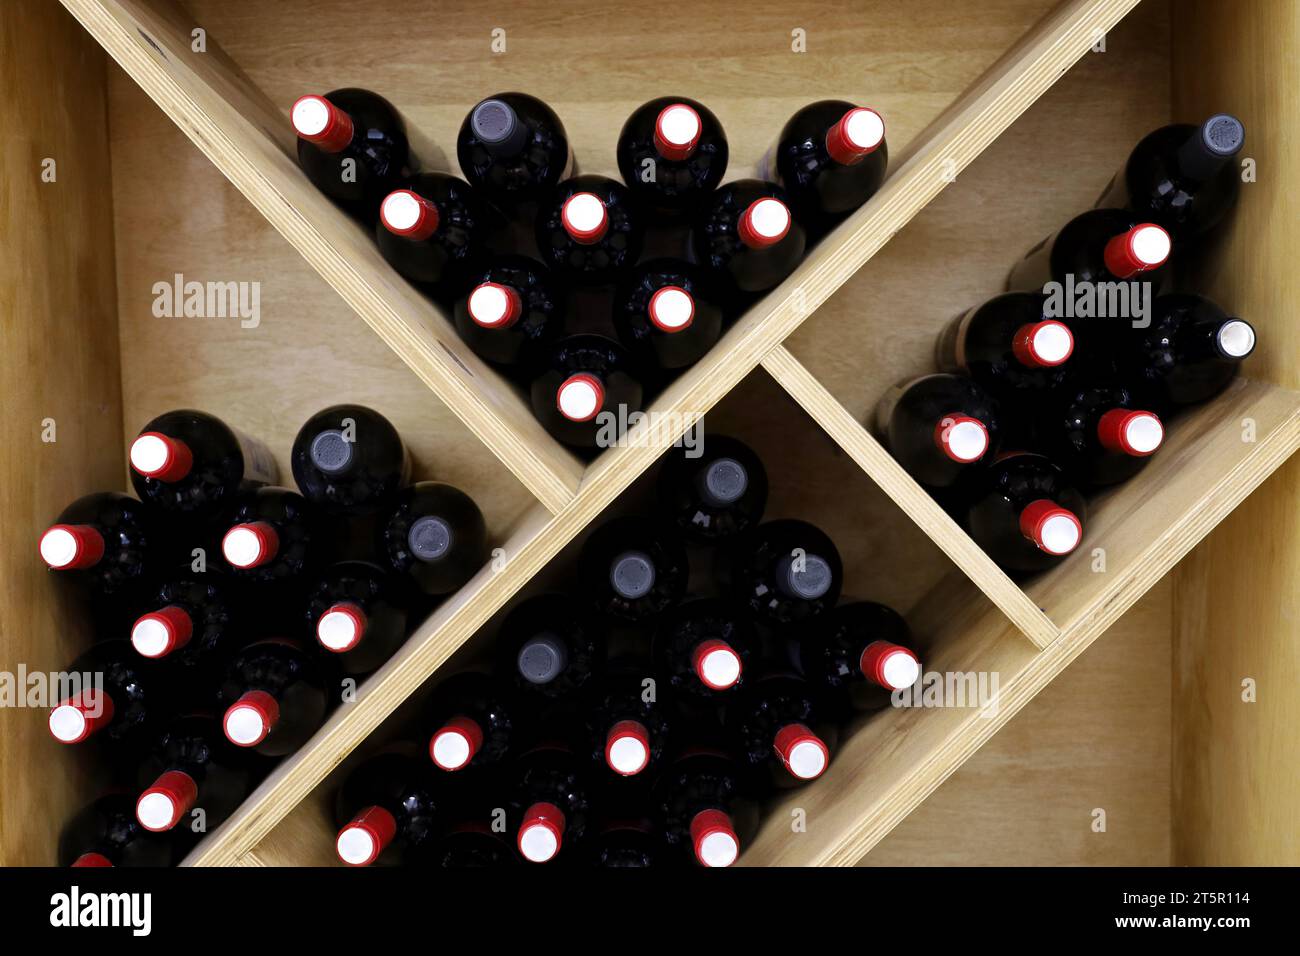 Bottiglie di vino in un portabottiglie di legno. Negozio di alcolici, vino bianco e rosso Foto Stock